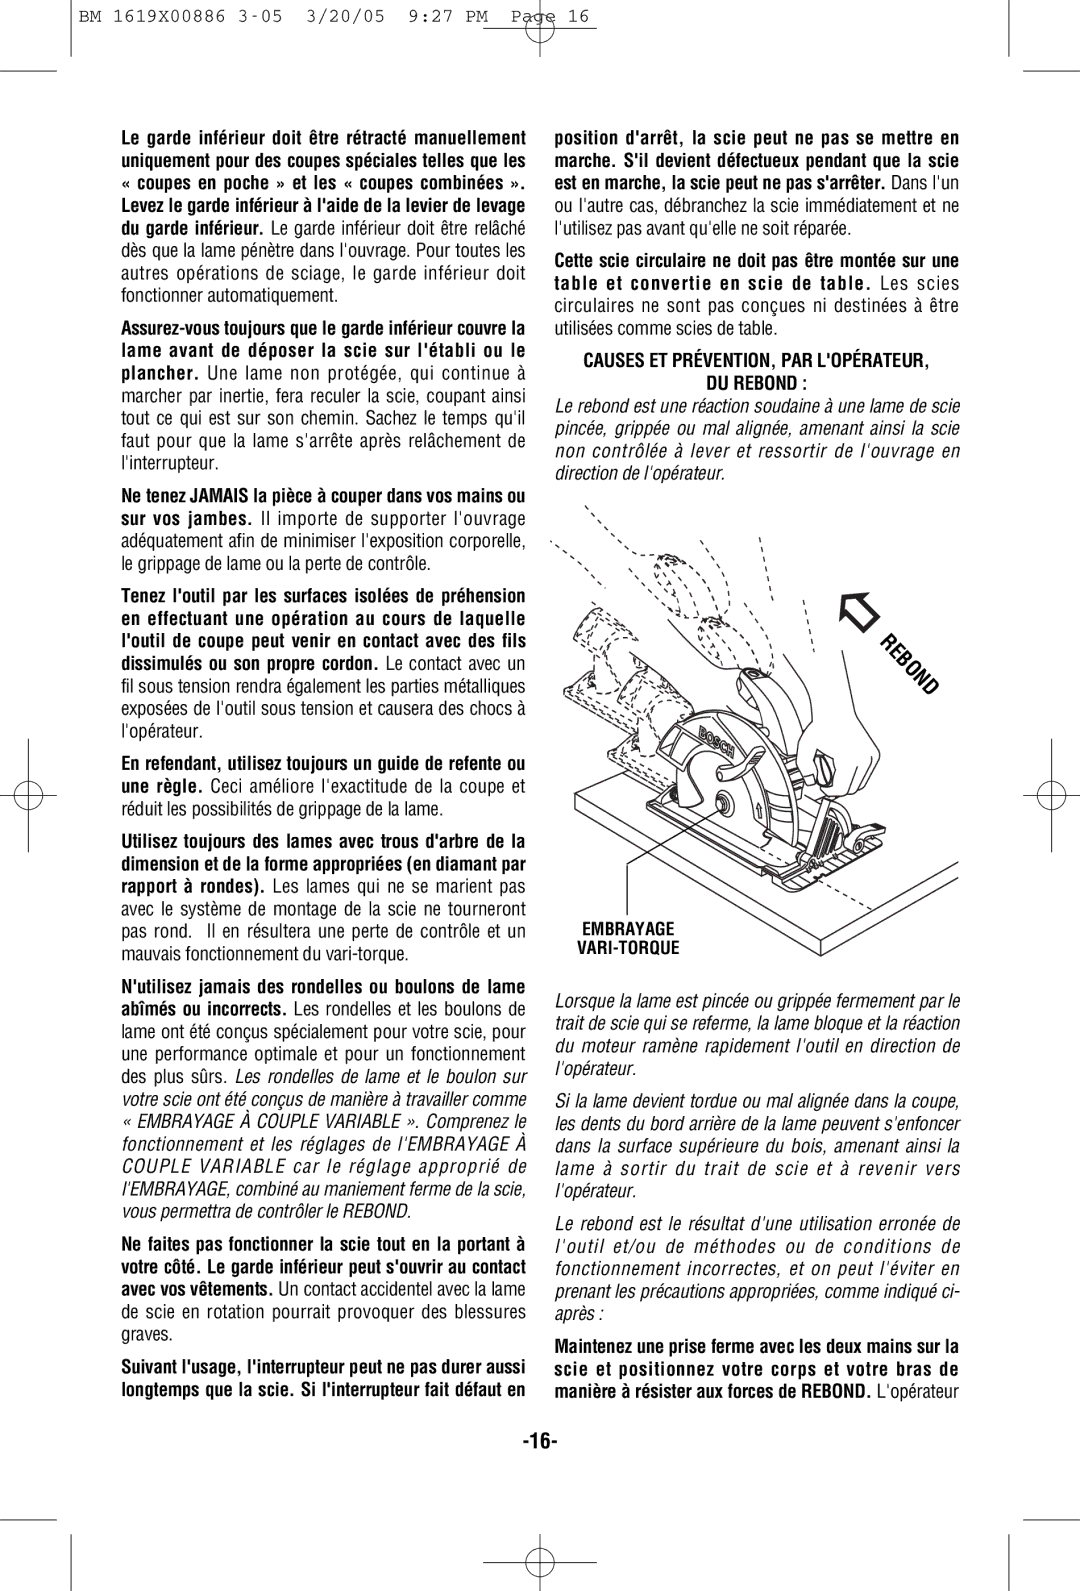 Bosch Power Tools CS10 manual Causes ET PRÉVENTION, PAR Lopérateur DU Rebond, Embrayage VARI-TORQUE 